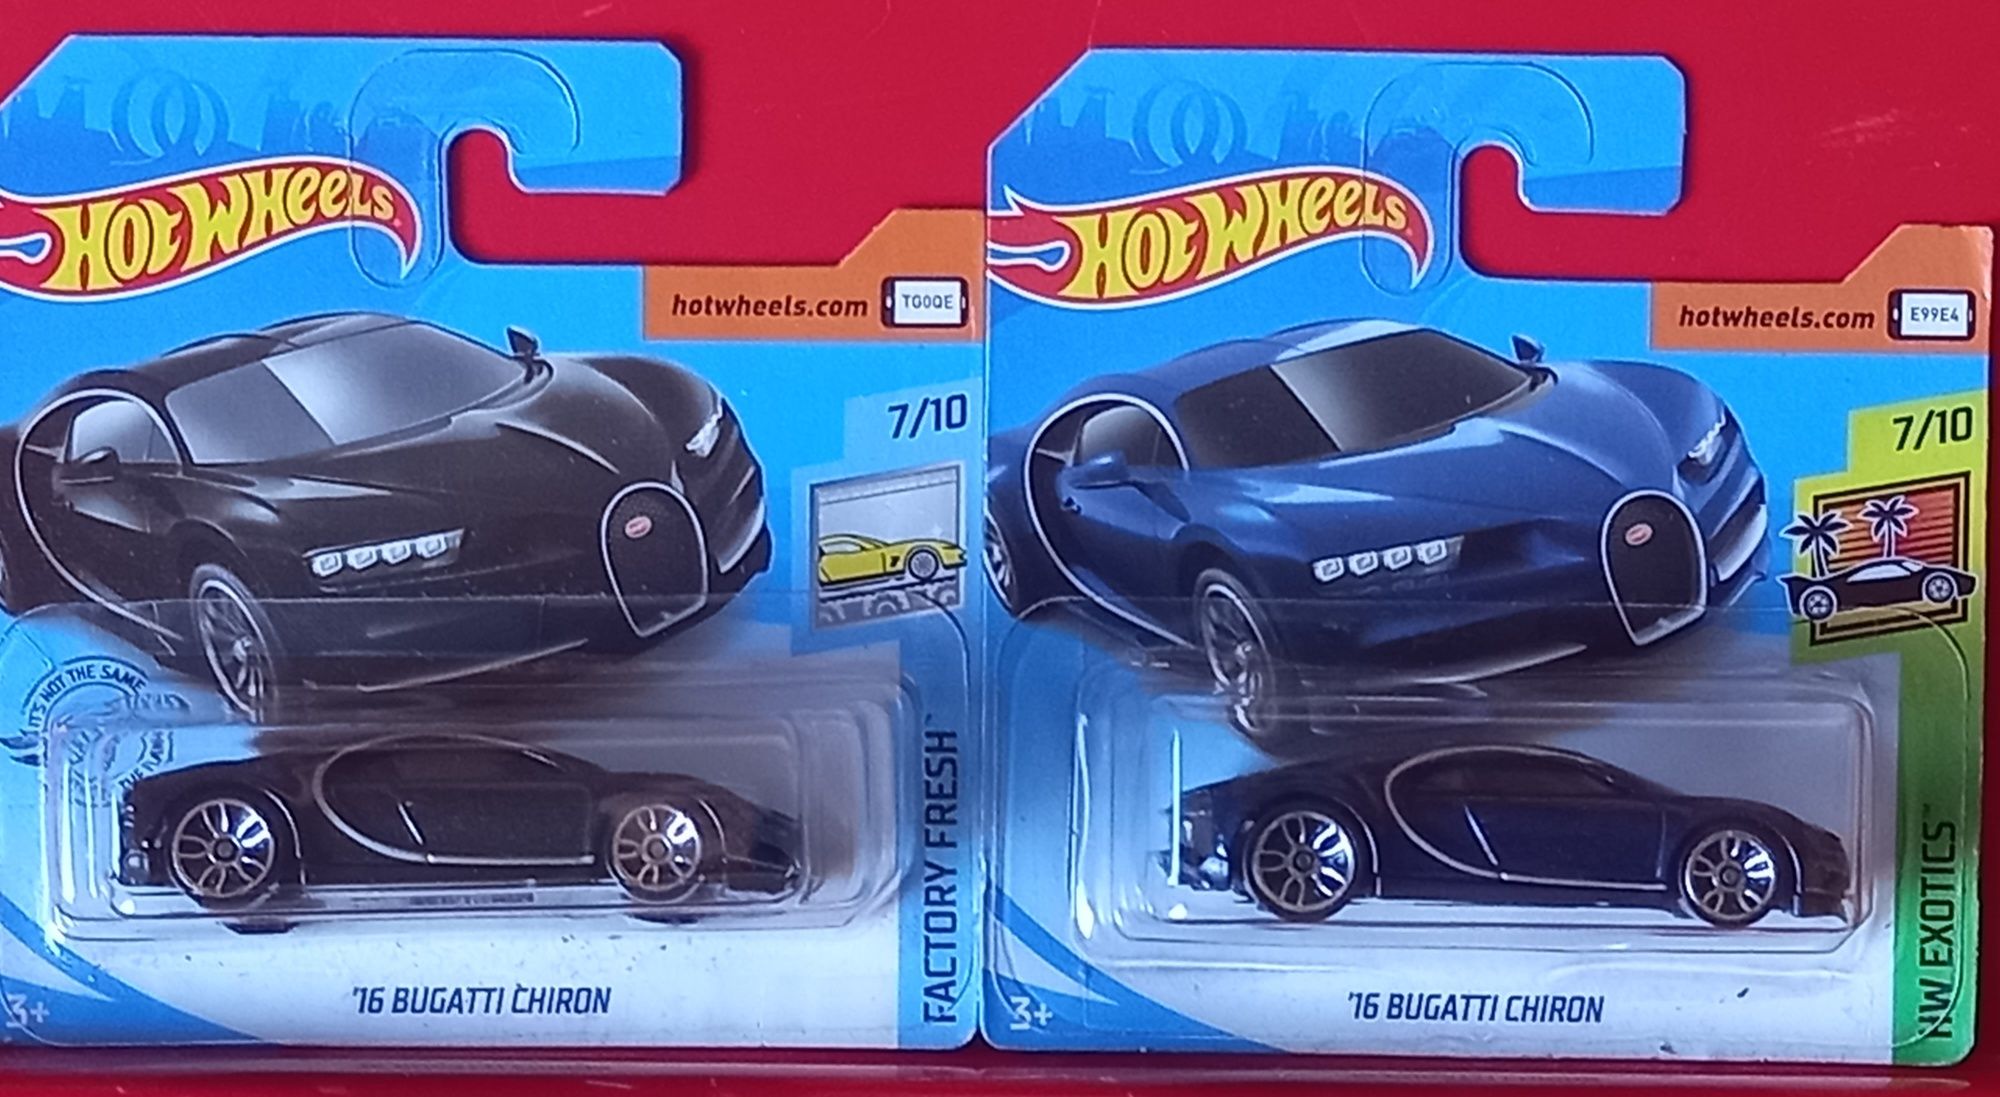 16 bugatti chiron hot wheels